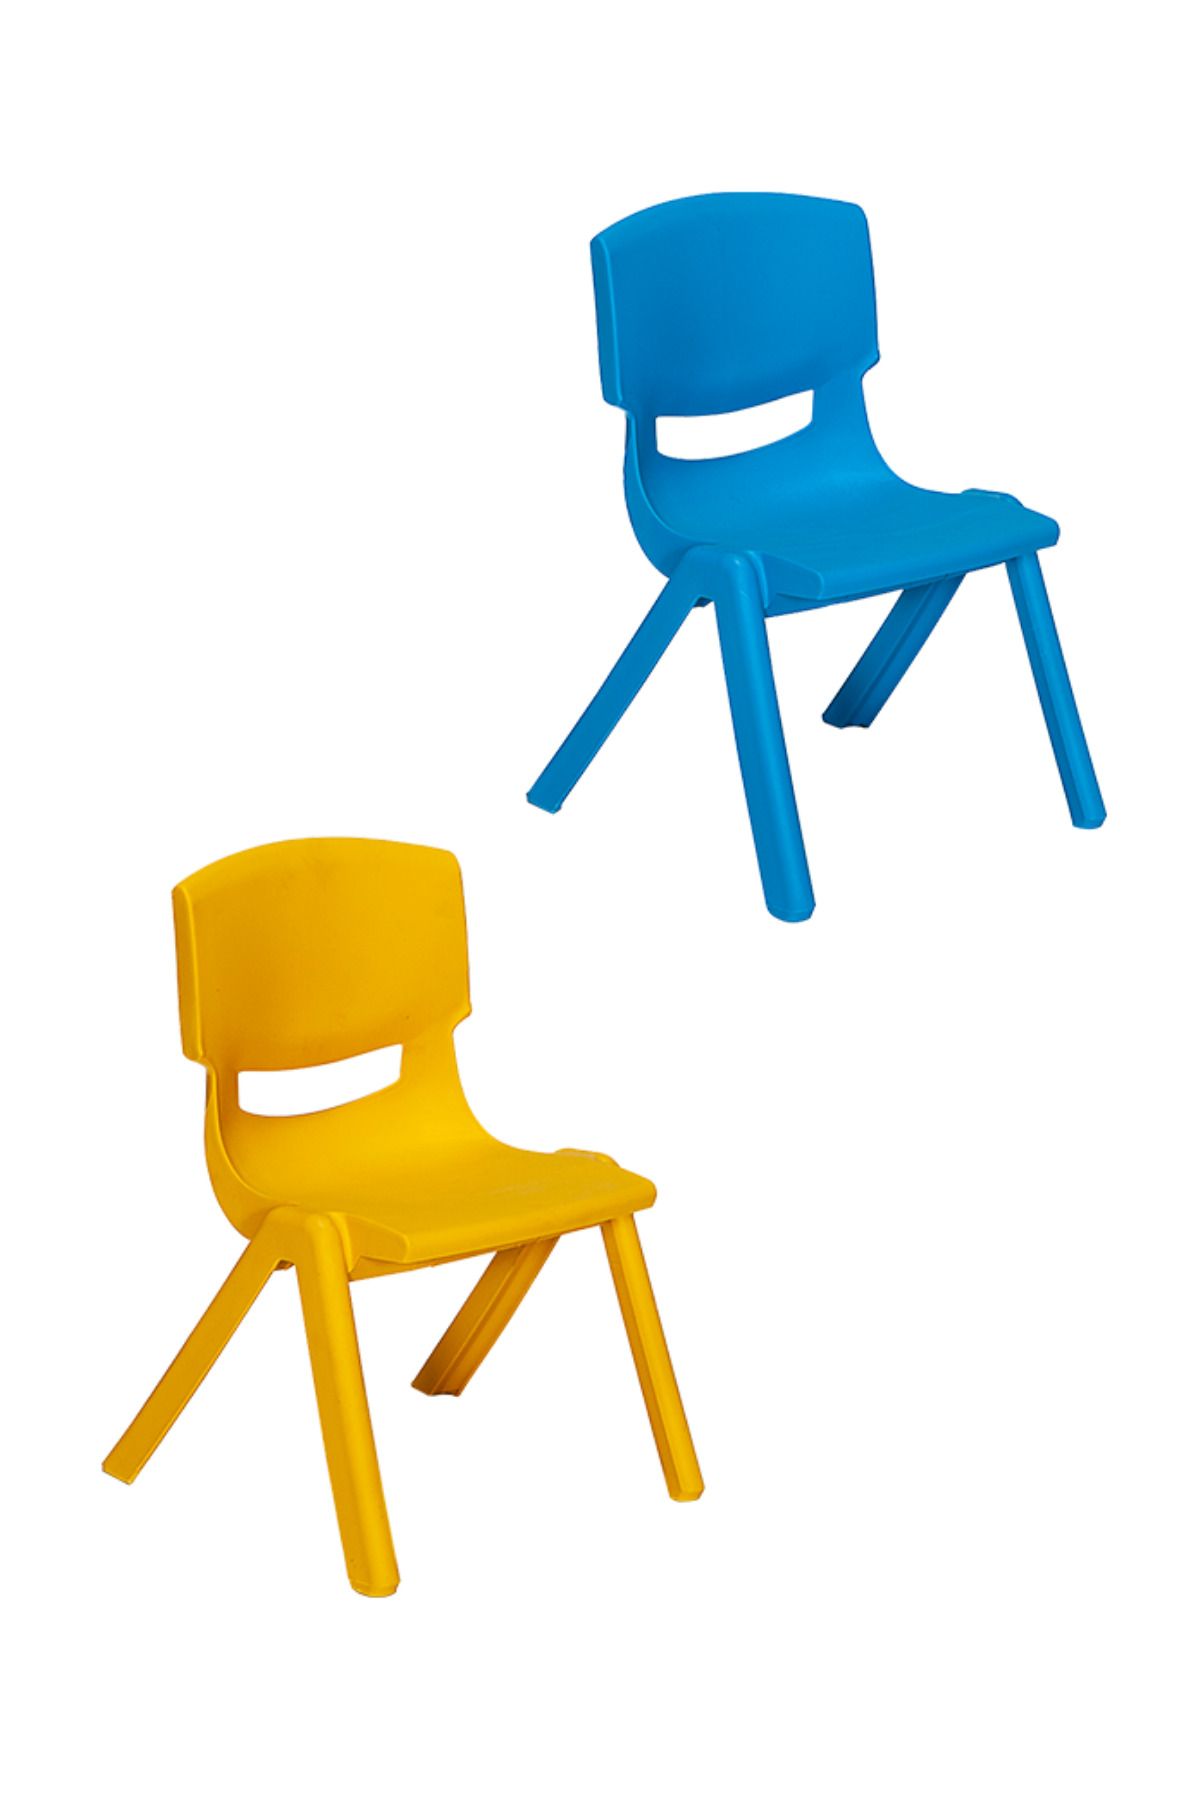 MOBETTO 2 Adet Kreş Anaokulu Çocuk Sandalyesi Sert Plastik- Sarı/Mavi